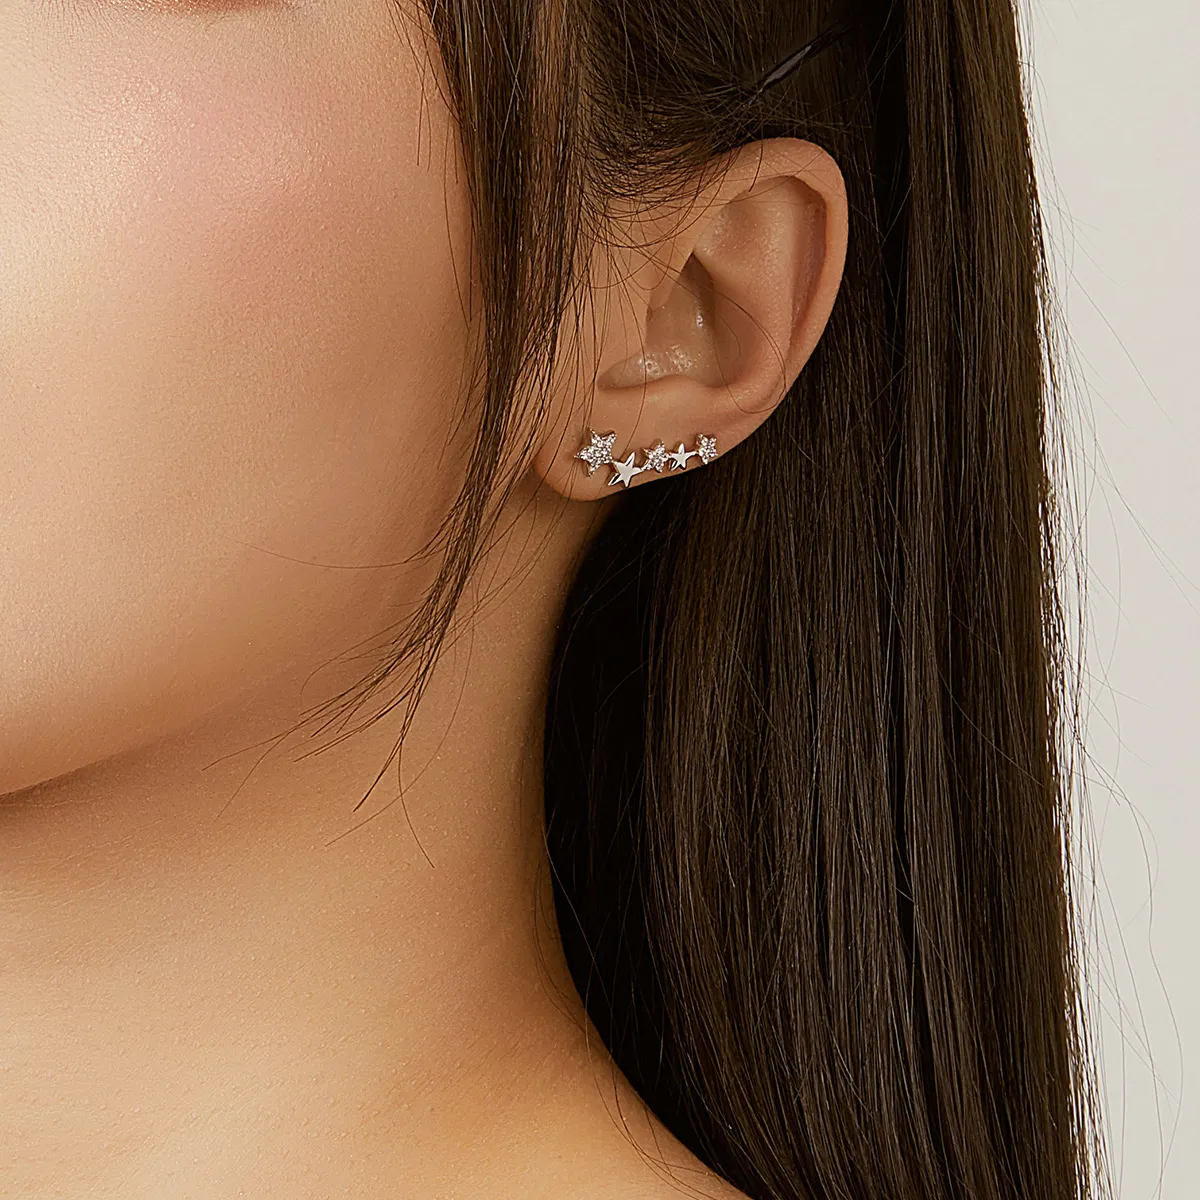 Pandora Style Silver Shining Stars Stud Earrings - BSE351